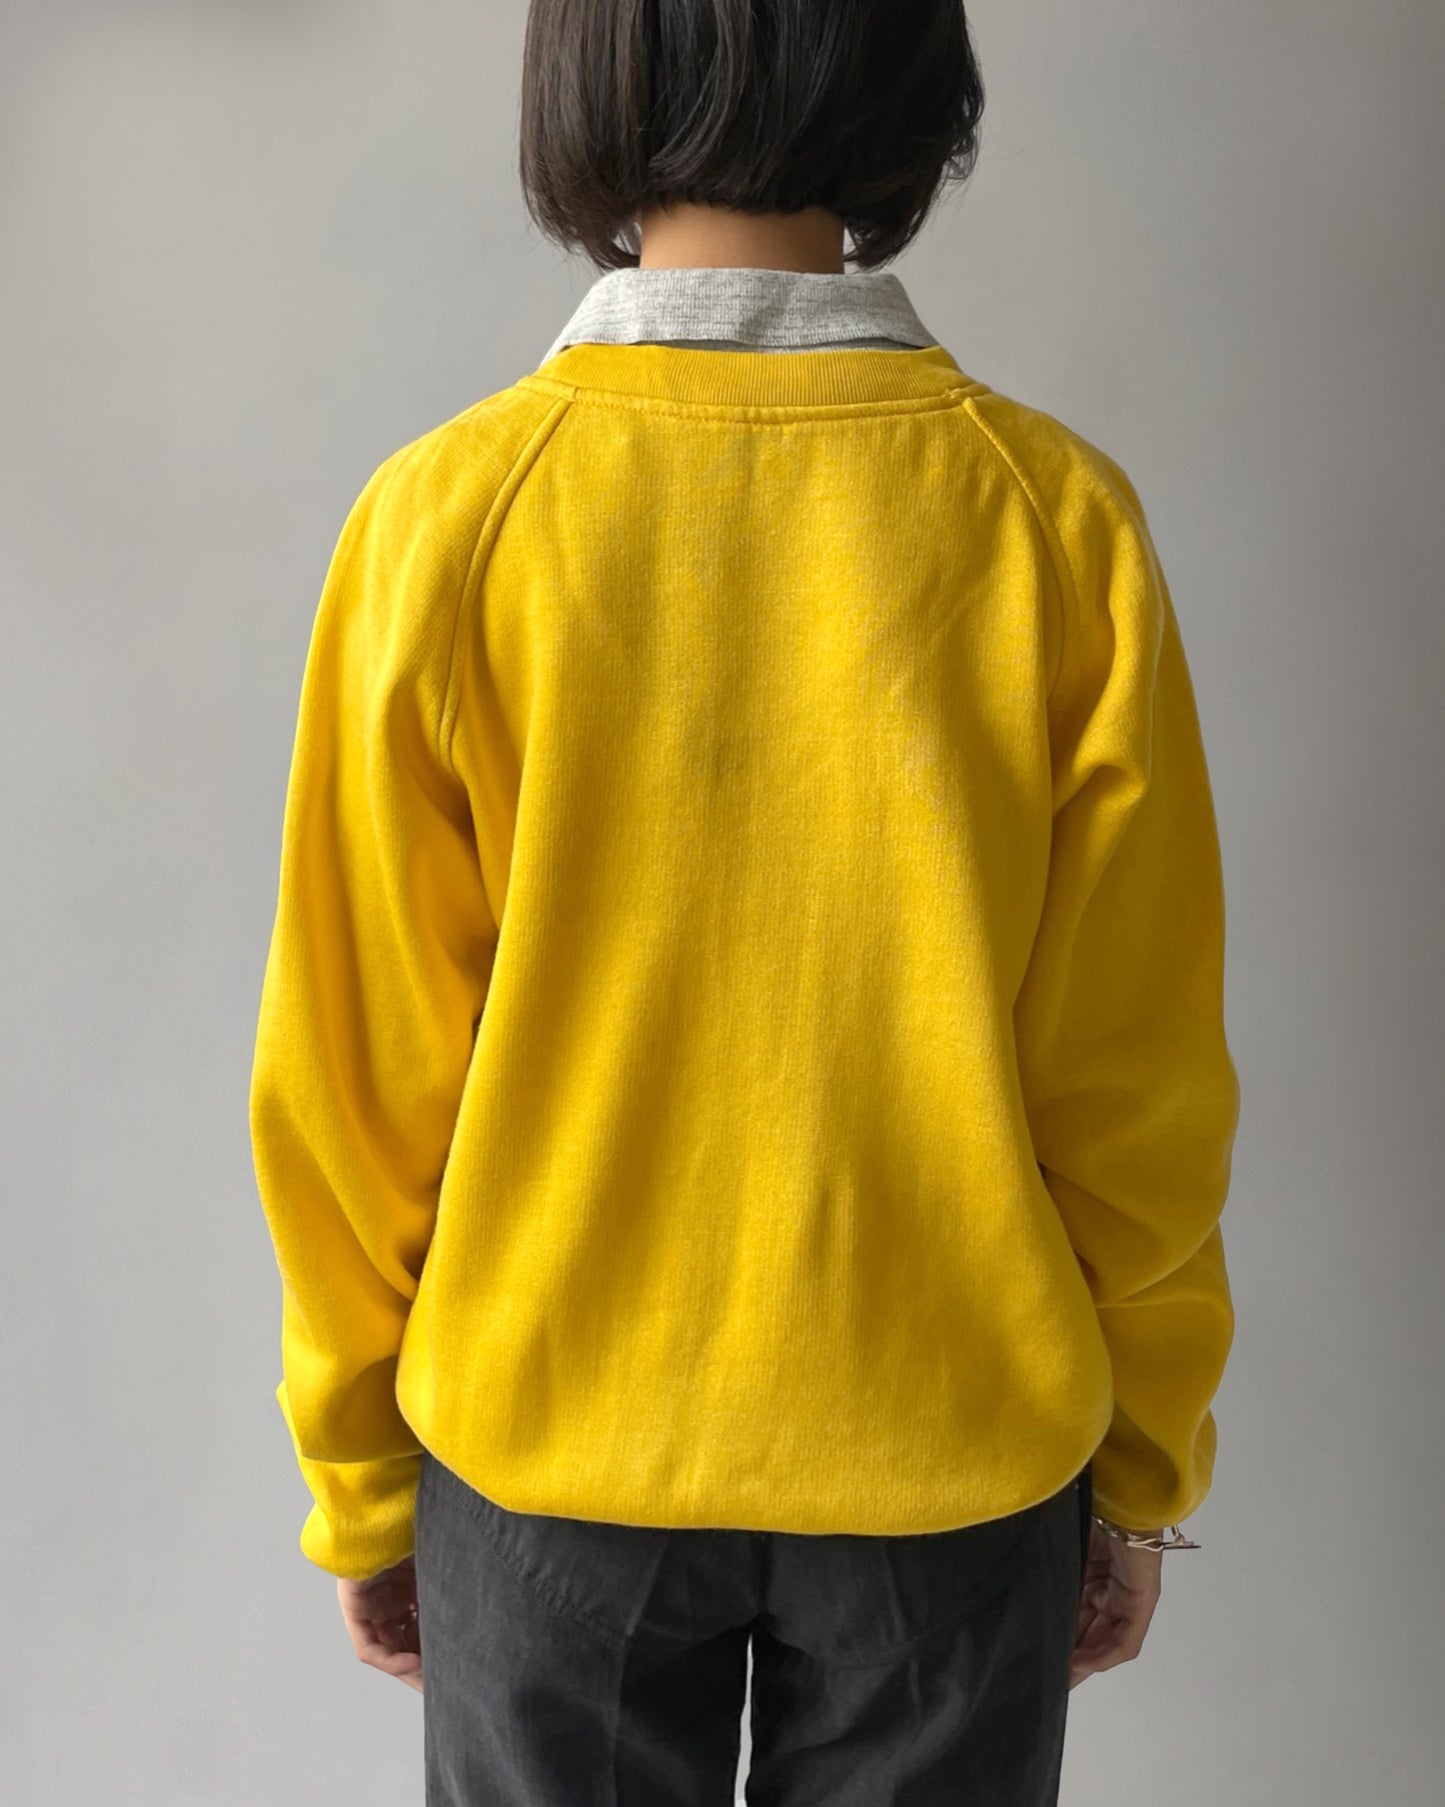 80's Acrylic Sweatshirt - Colour Yellow